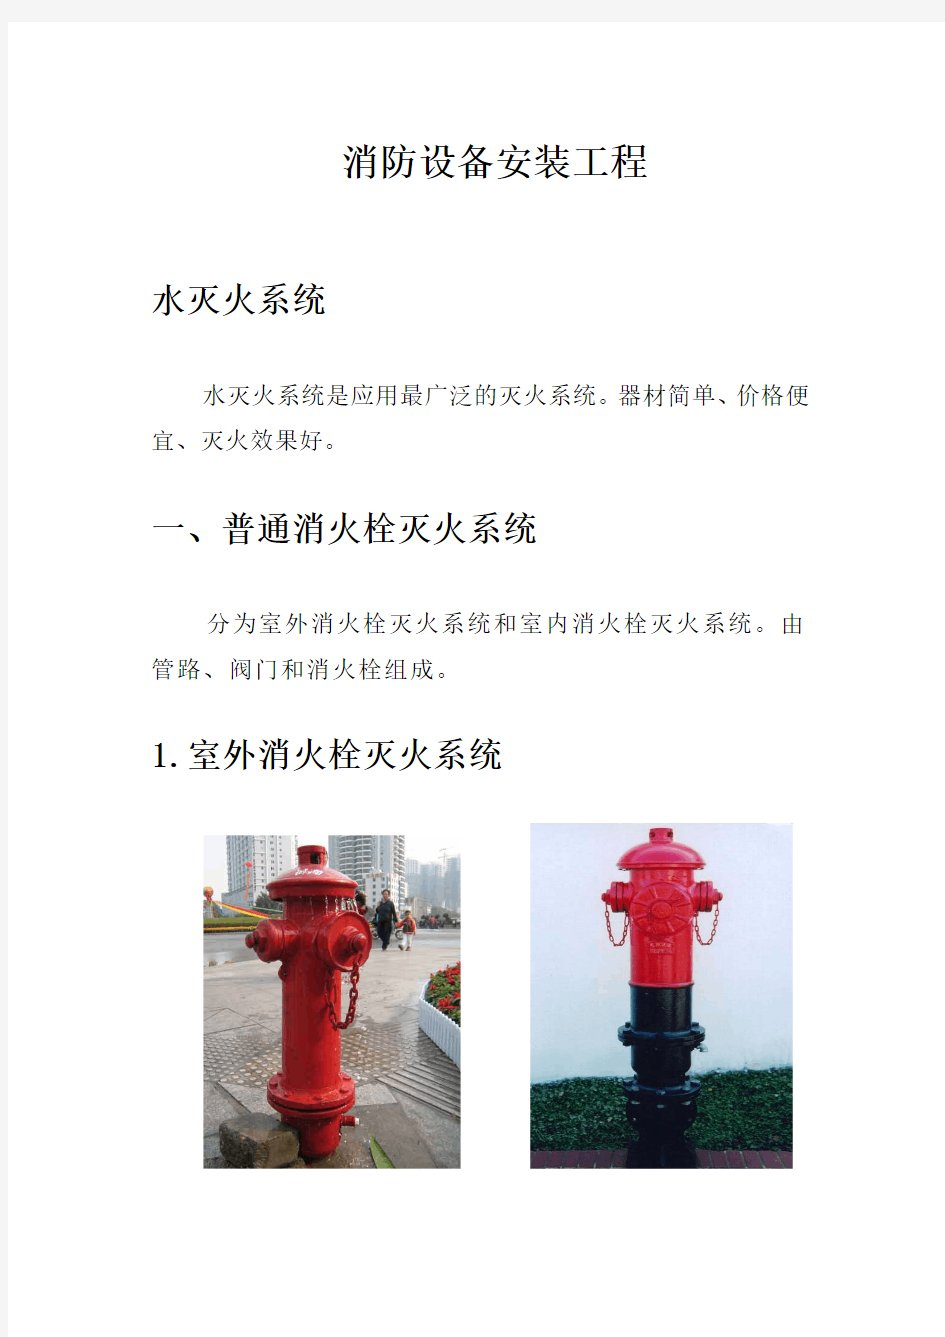 消防设备安装工程学习资料(普通消火栓系统)